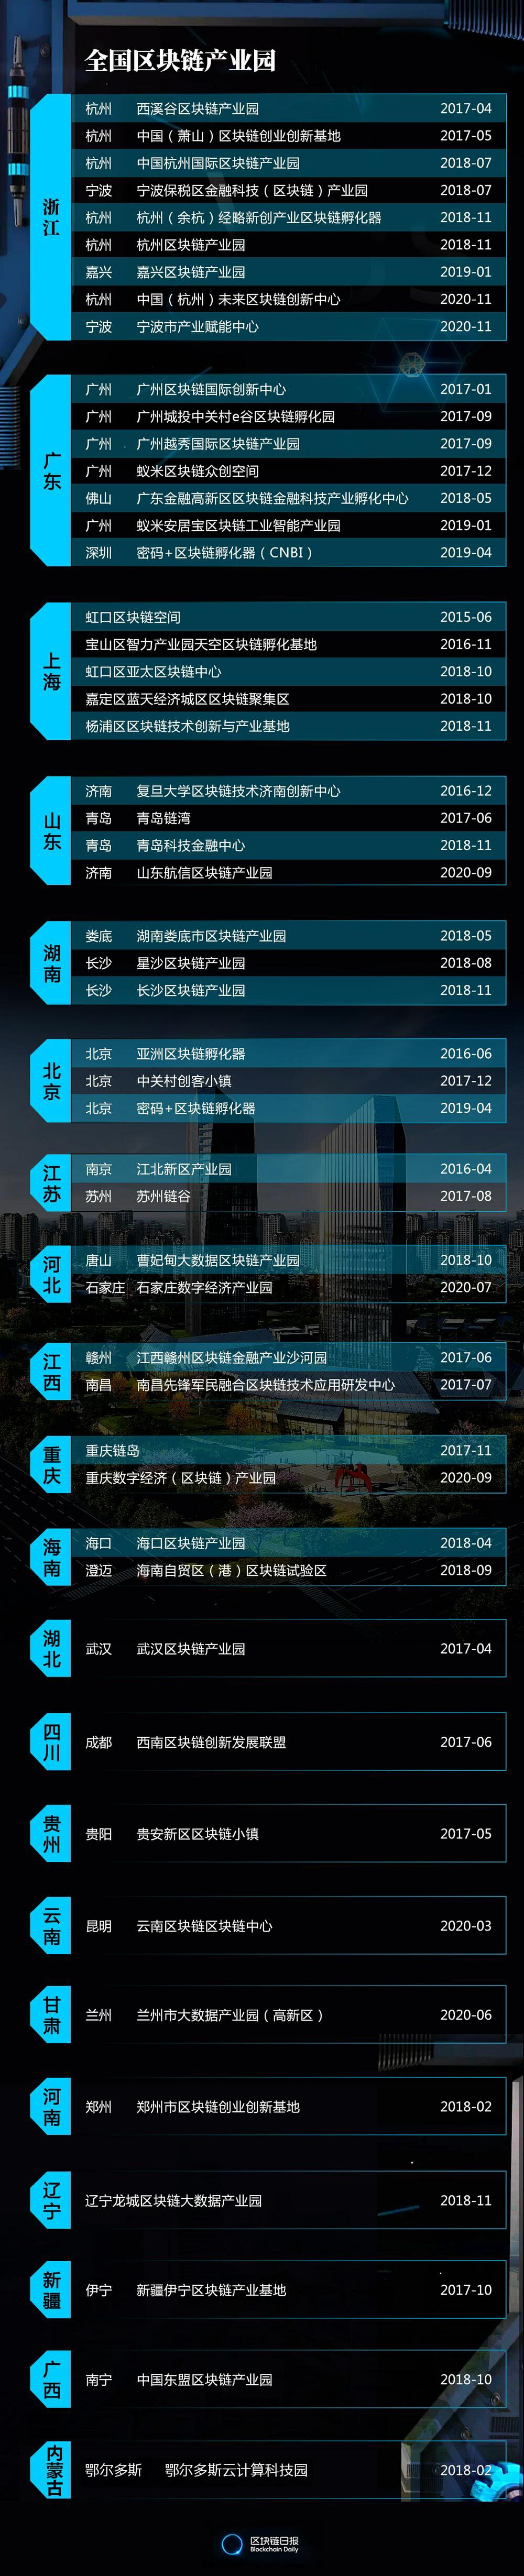 全国建成51家区块链产业园，浙江、广东、上海位居前三